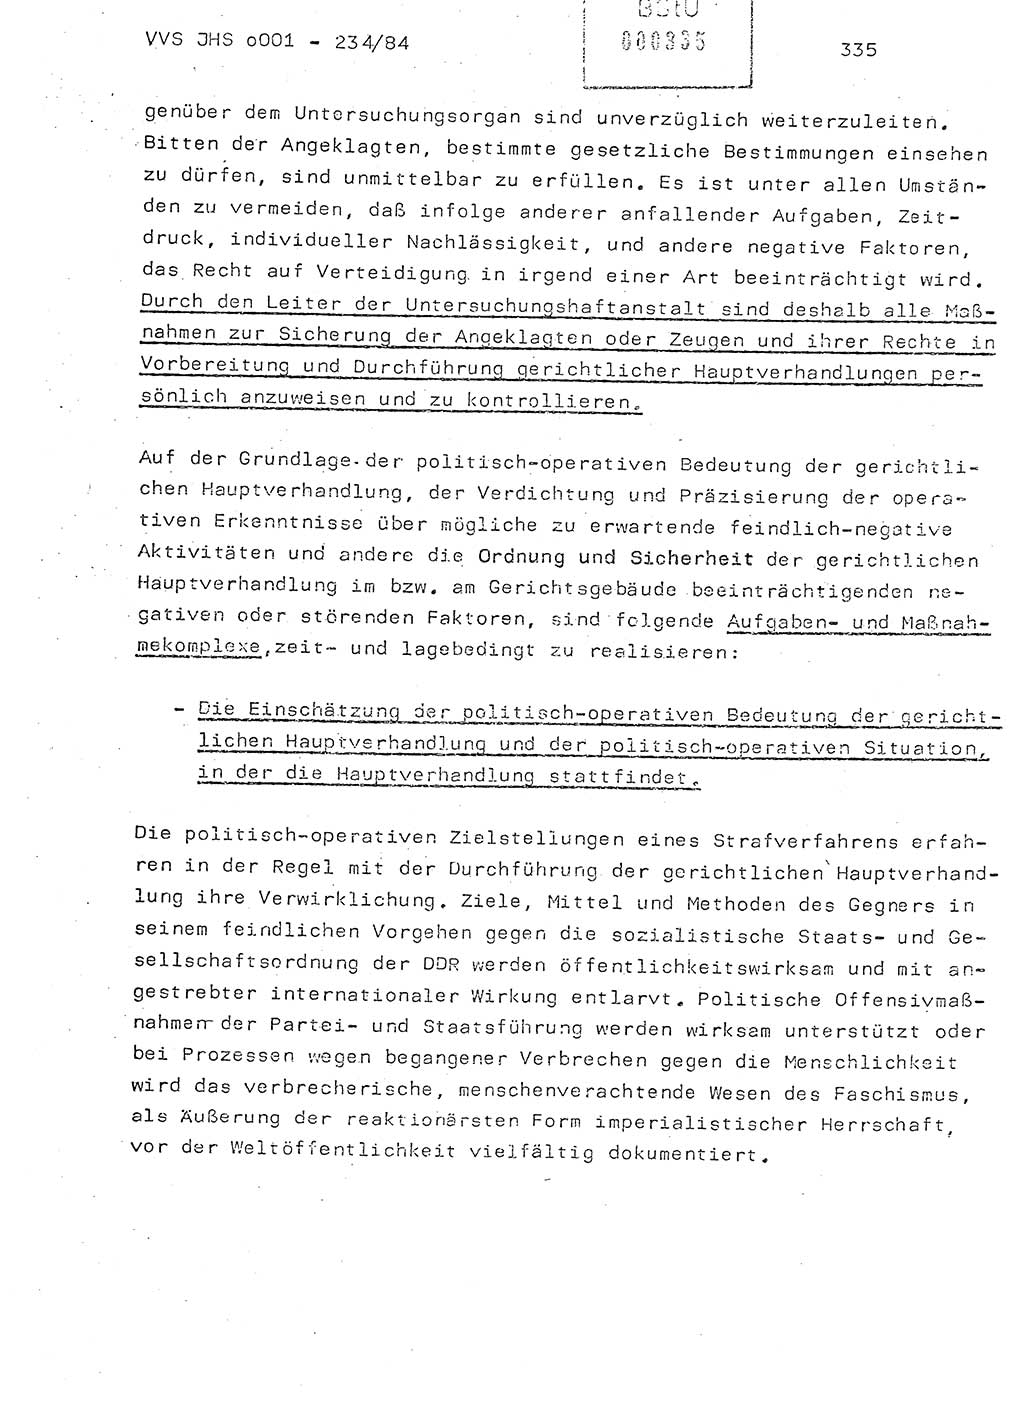 Dissertation Oberst Siegfried Rataizick (Abt. ⅩⅣ), Oberstleutnant Volkmar Heinz (Abt. ⅩⅣ), Oberstleutnant Werner Stein (HA Ⅸ), Hauptmann Heinz Conrad (JHS), Ministerium für Staatssicherheit (MfS) [Deutsche Demokratische Republik (DDR)], Juristische Hochschule (JHS), Vertrauliche Verschlußsache (VVS) o001-234/84, Potsdam 1984, Seite 335 (Diss. MfS DDR JHS VVS o001-234/84 1984, S. 335)